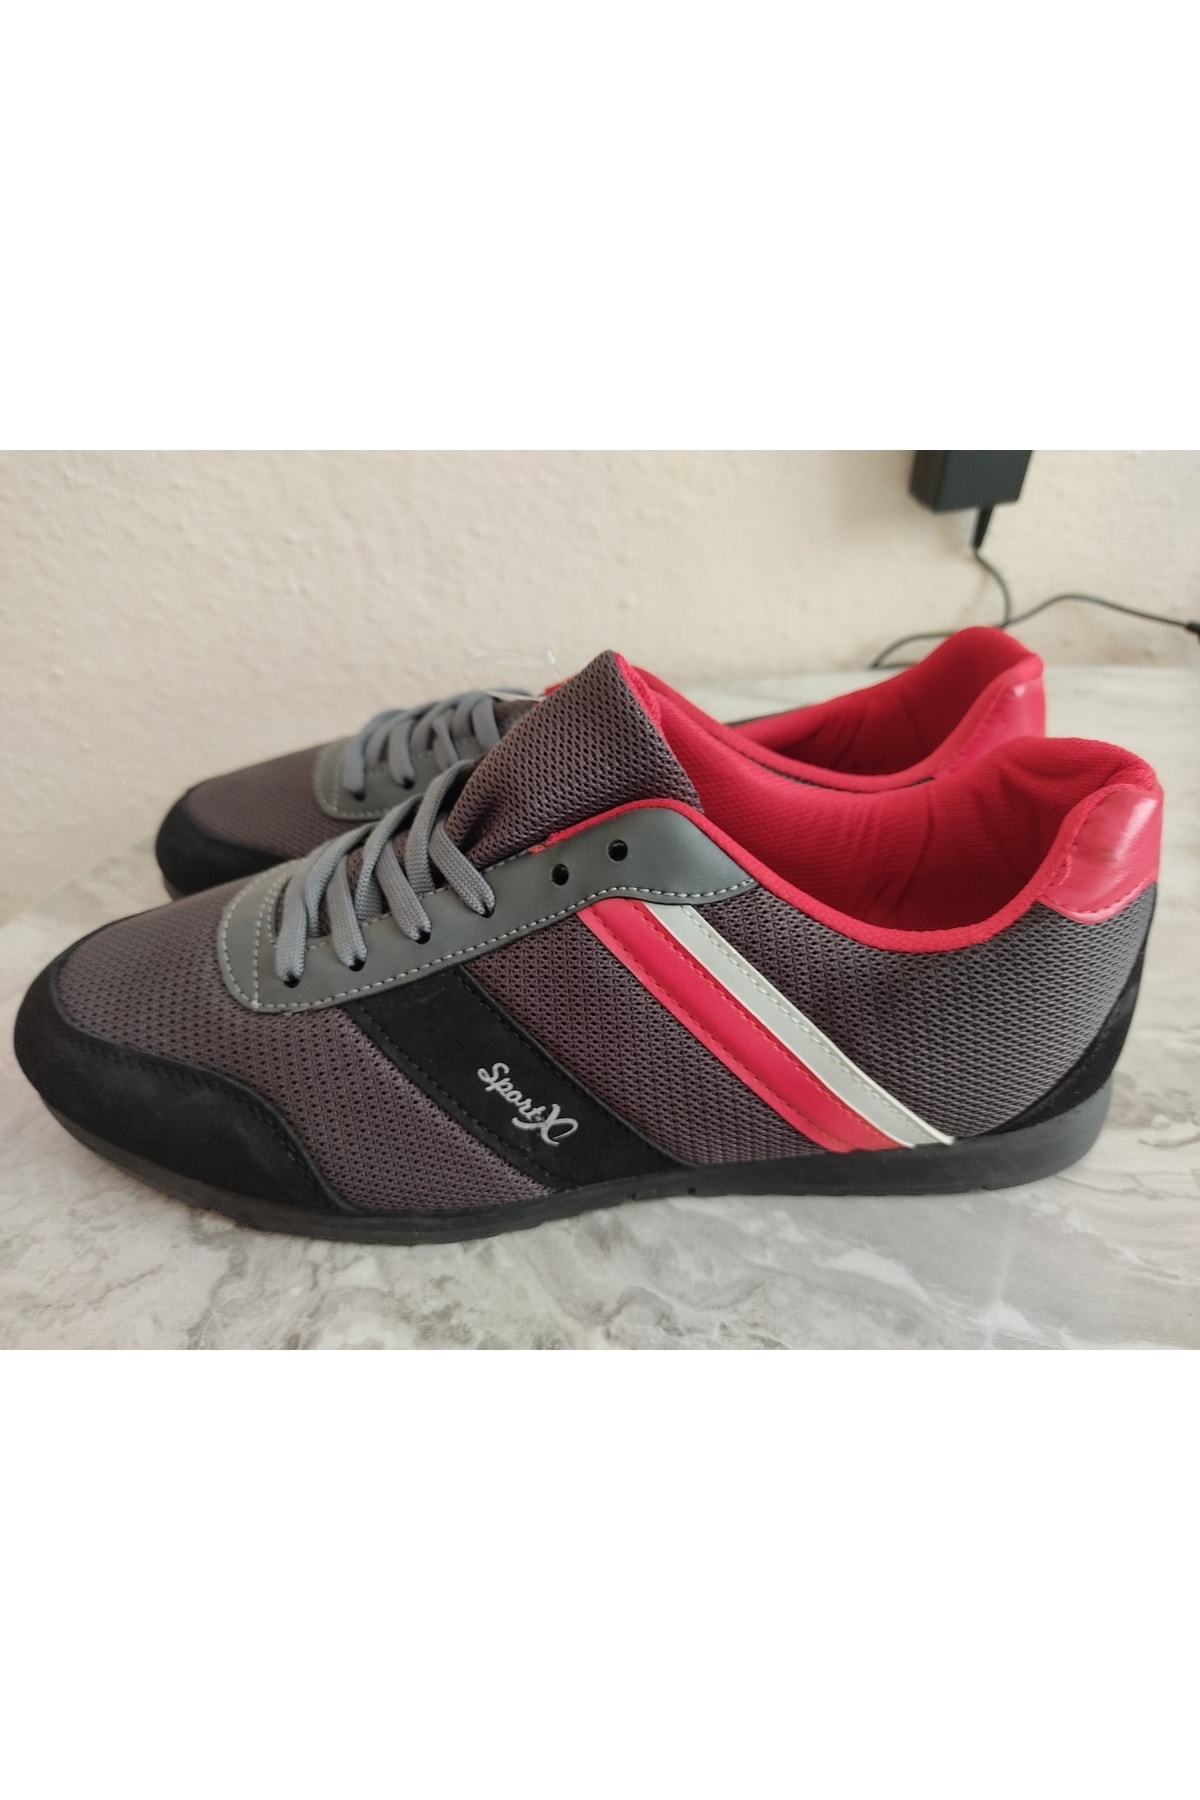 merdane Sportx Spor Ayakkabı Kırmızı Gri